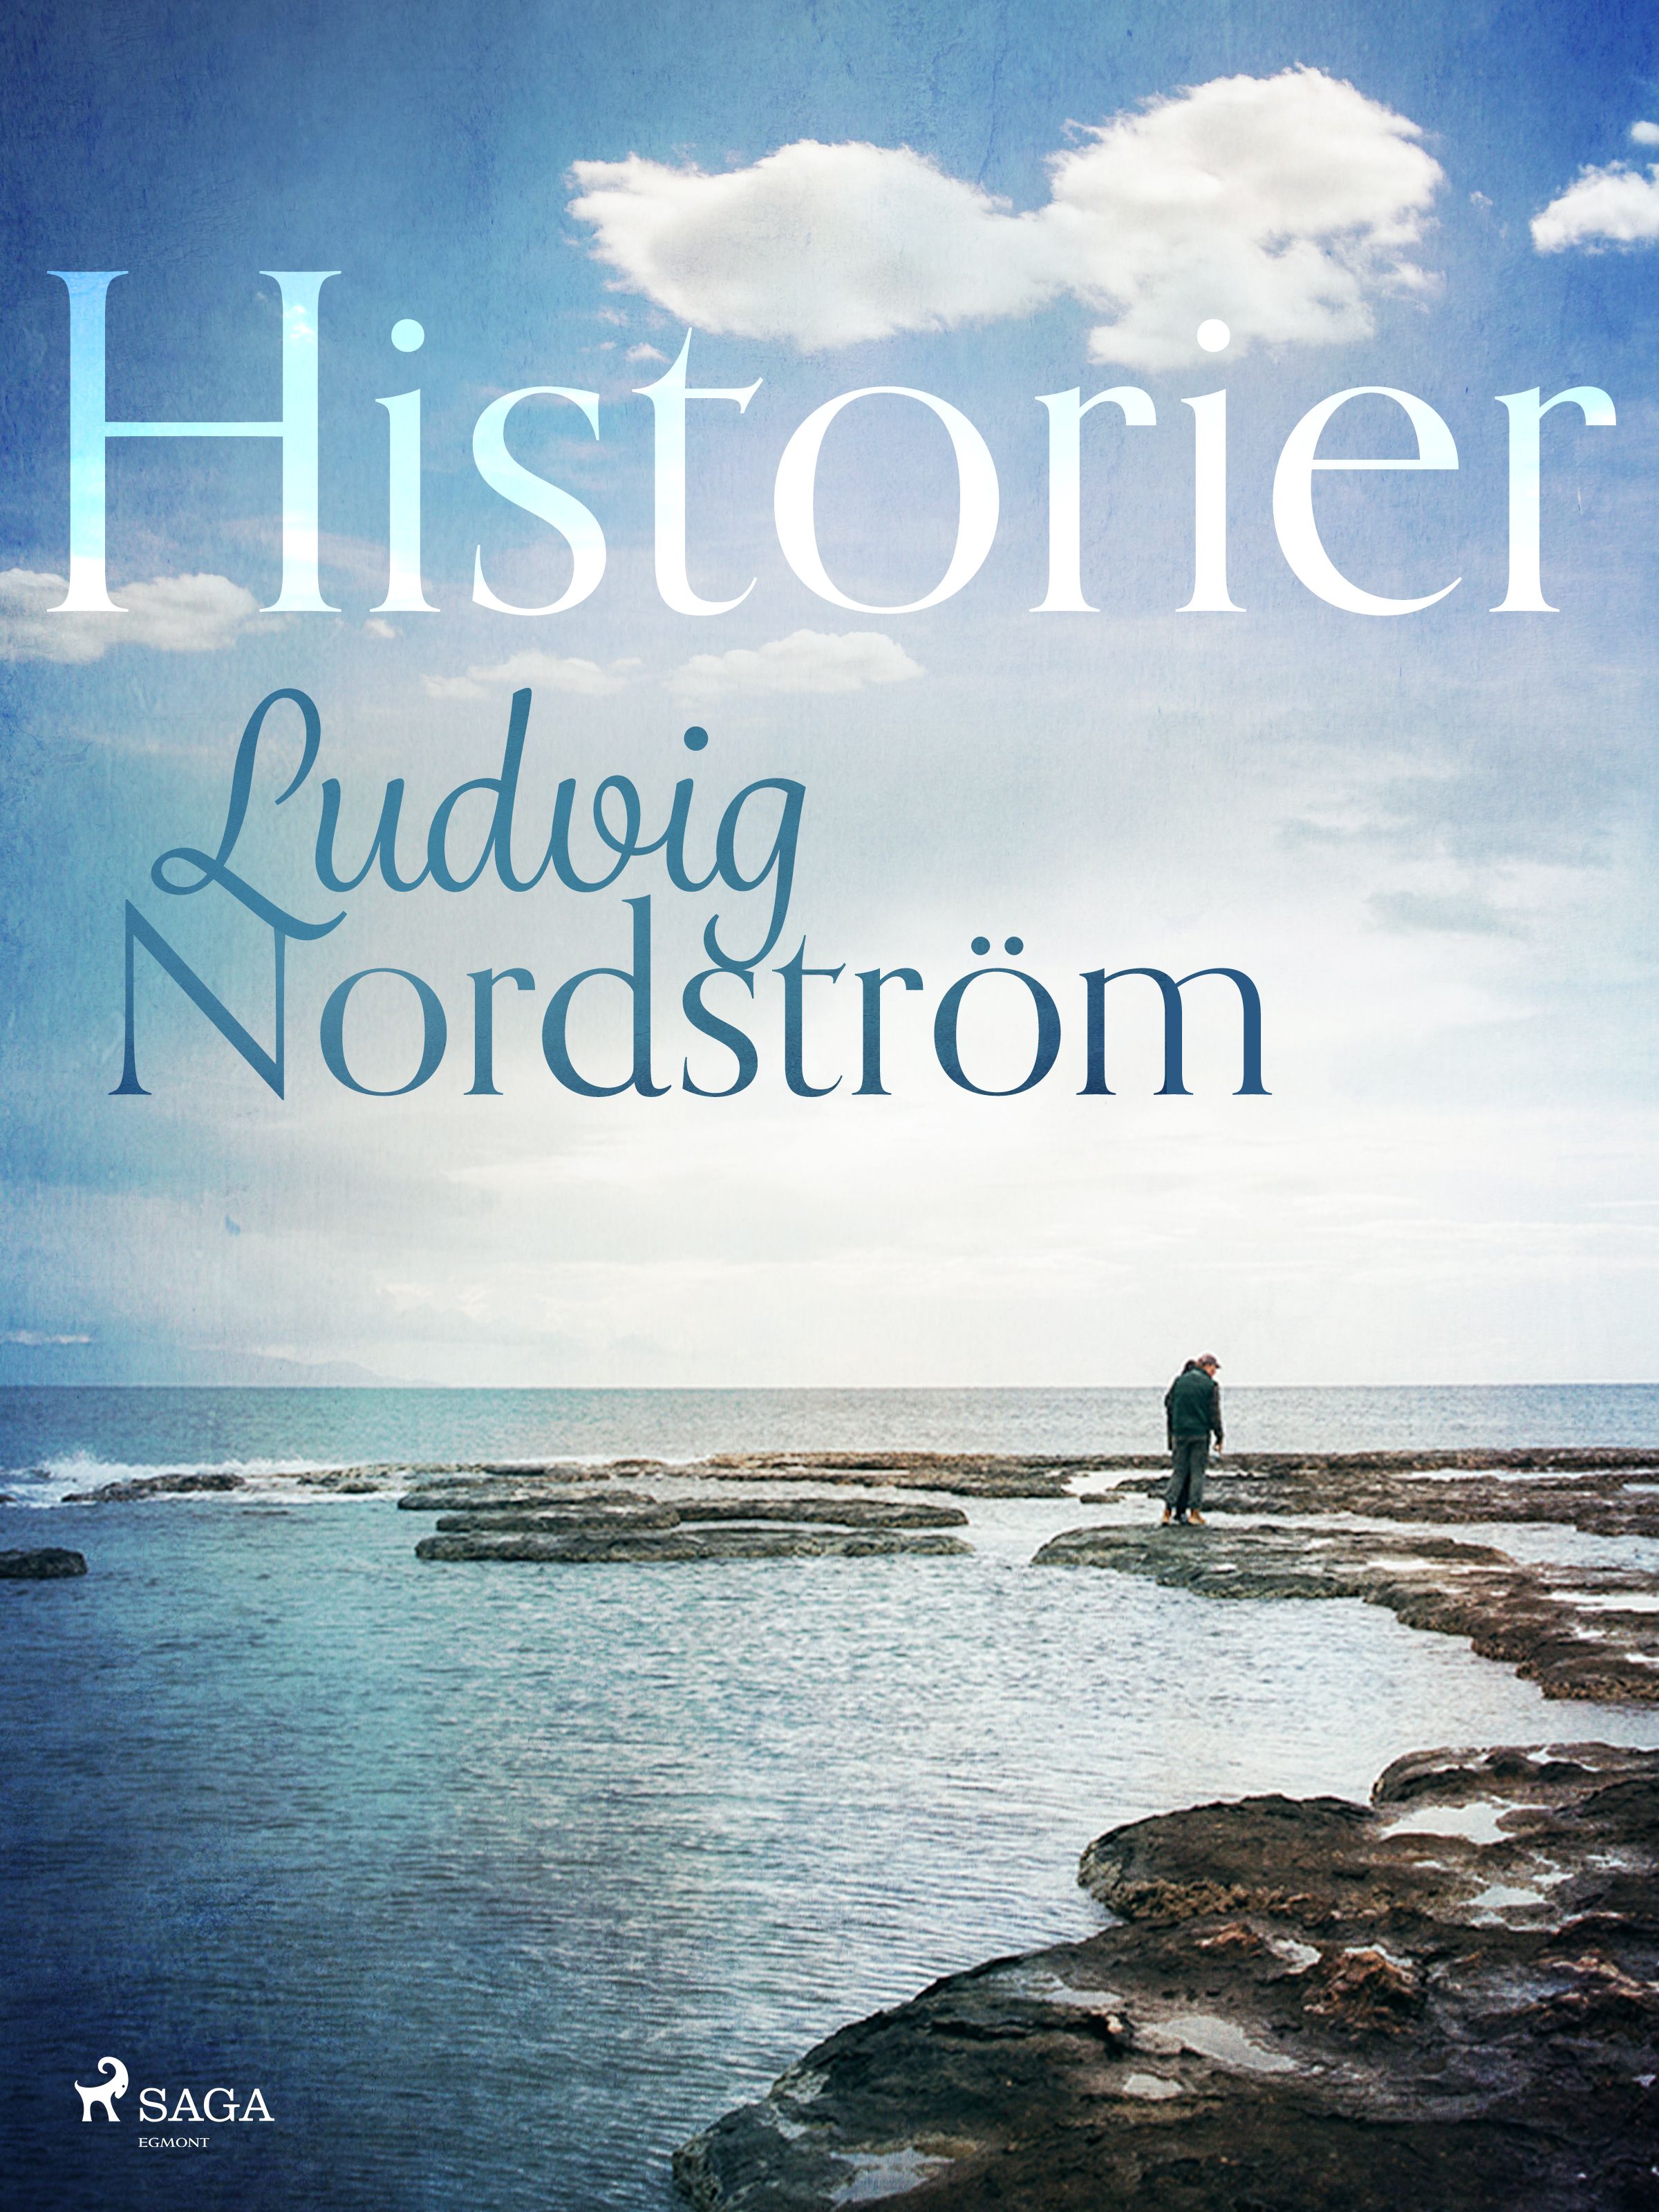 Historier, eBook by Ludvig Nordström